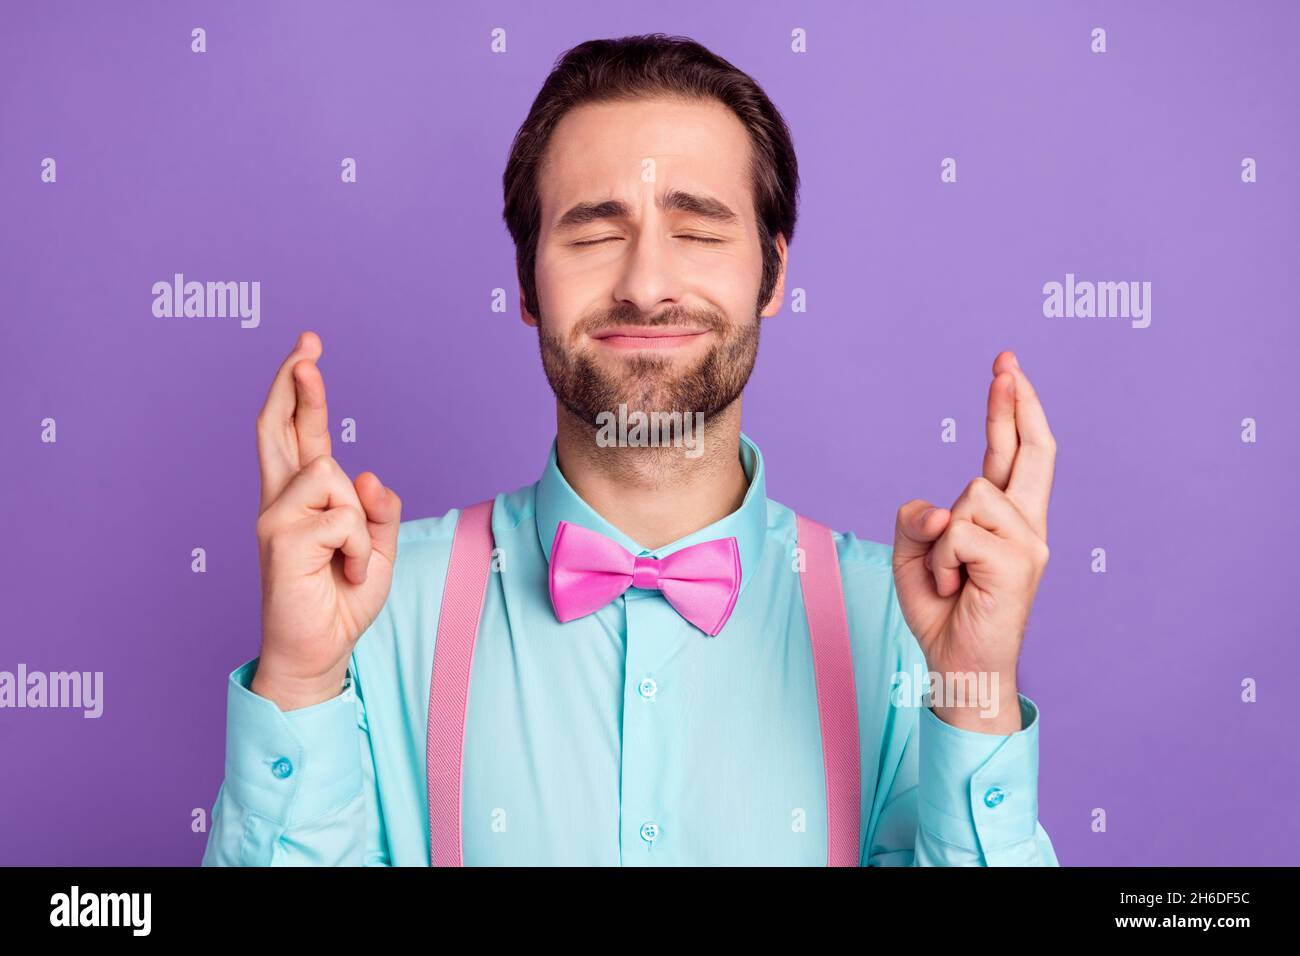 Photo de la question millennal brunet gars croisé doigts porter cravate bretelles chemise bleue isolée sur fond violet Banque D'Images